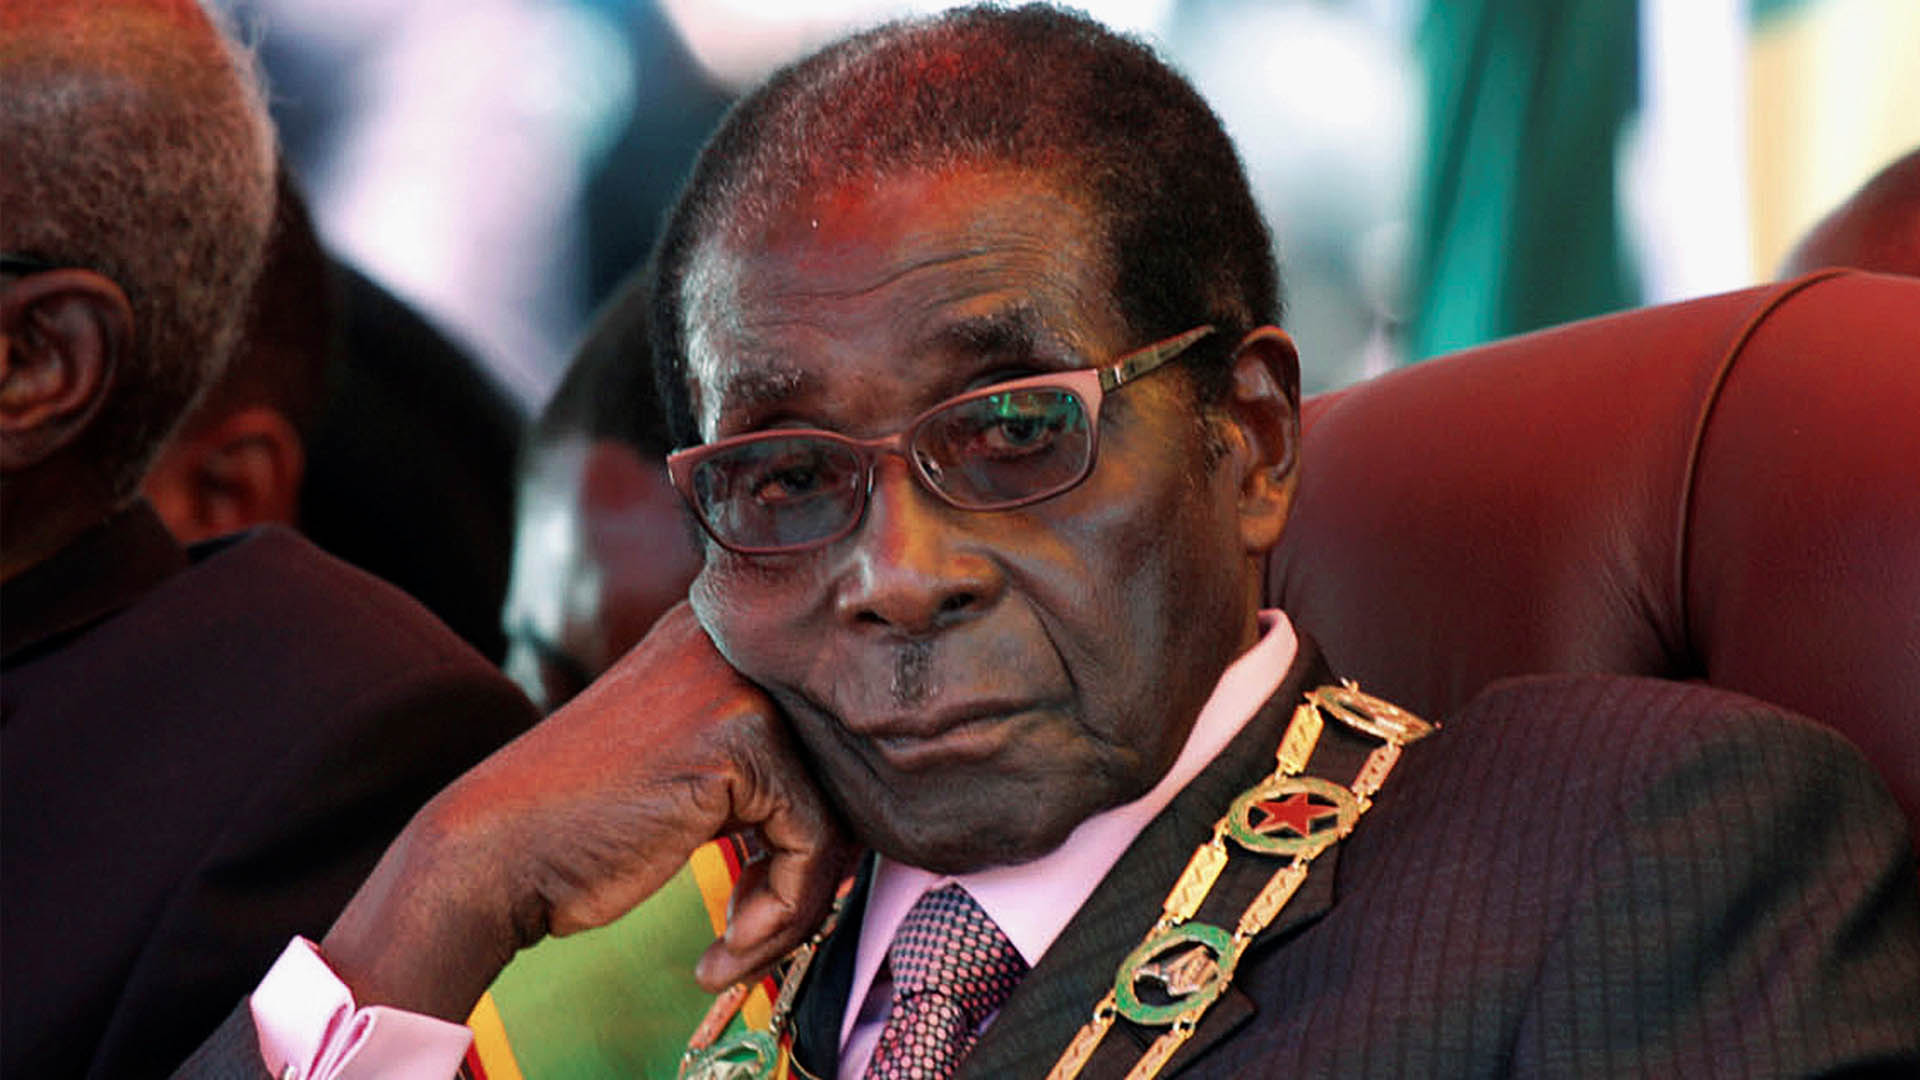 Mugabe se niega a dimitir y pide que Zimbabue vuelva a la normalidad